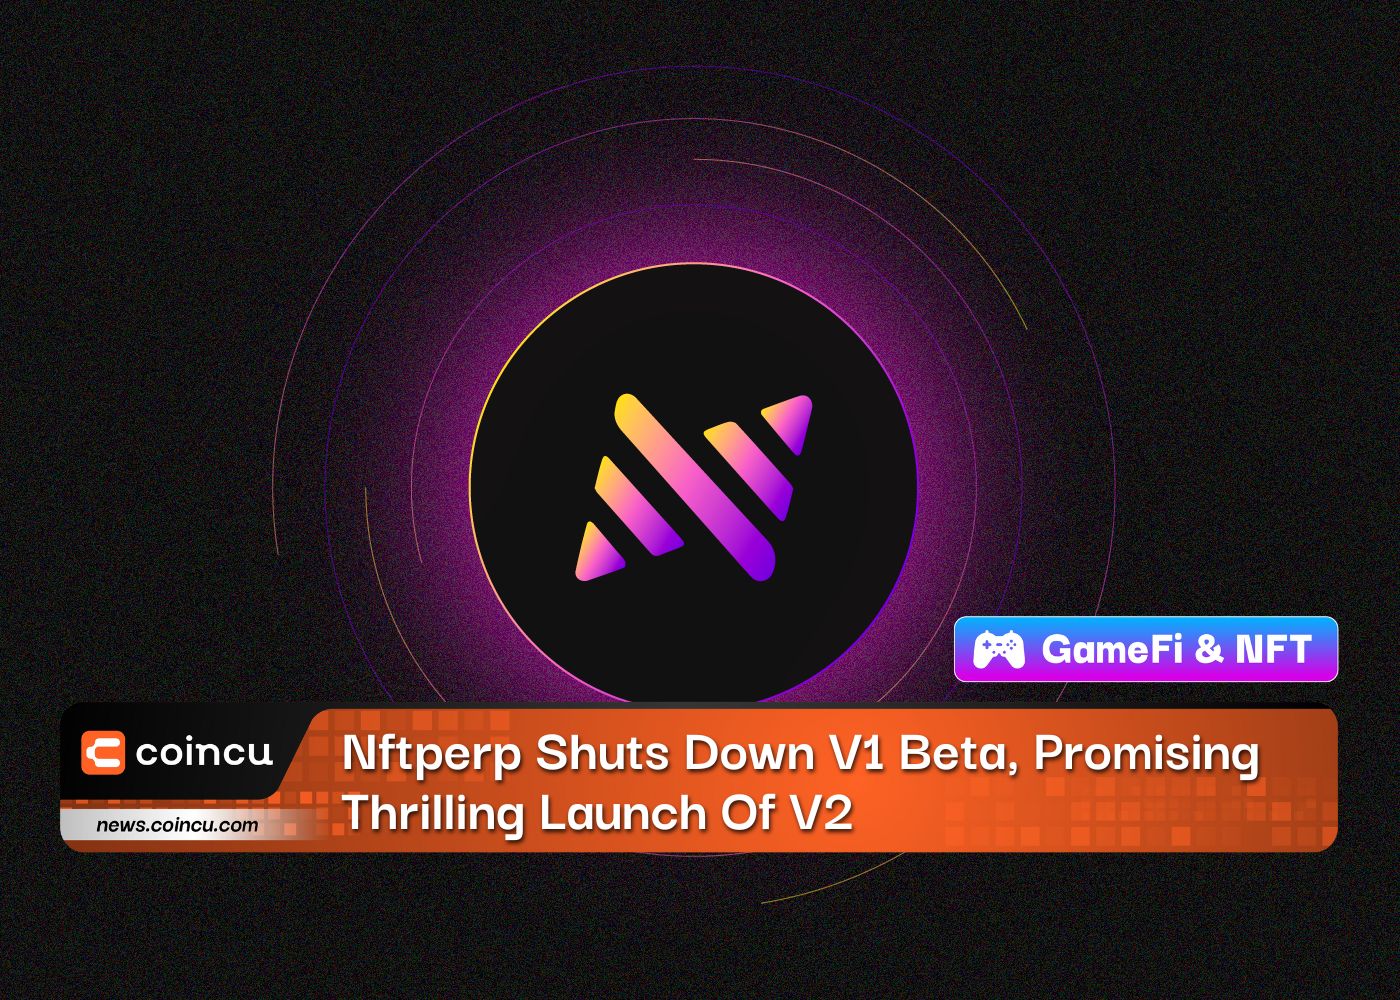 Nftperp Shuts Down V1 Beta, Promising Thrilling Launch Of V2